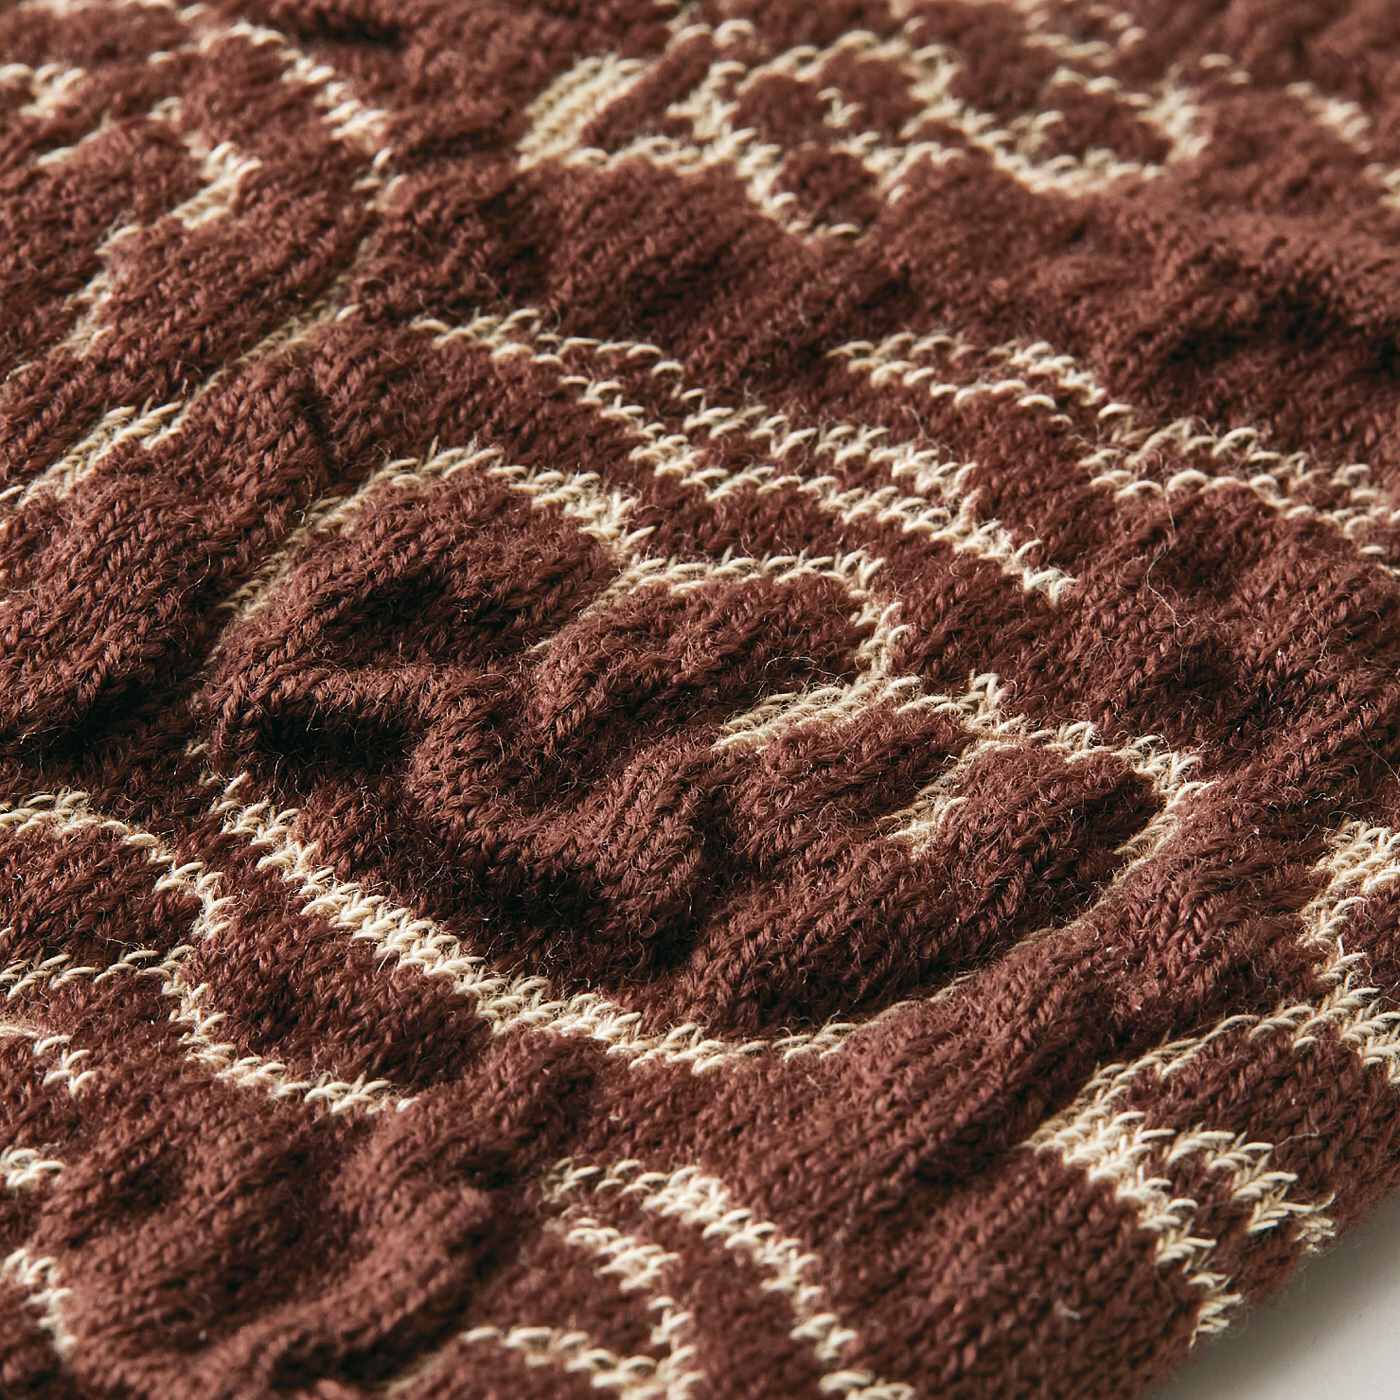 SAANA JA OLLI|サーナ ヤ オッリ　膨れ編みが空気を含んであたたかい　セーター屋さんで編み立てた肌側オーガニックコットン混のレッグカバーの会|セーター用の横編み機を使っているので厚手の生地感であたたか。